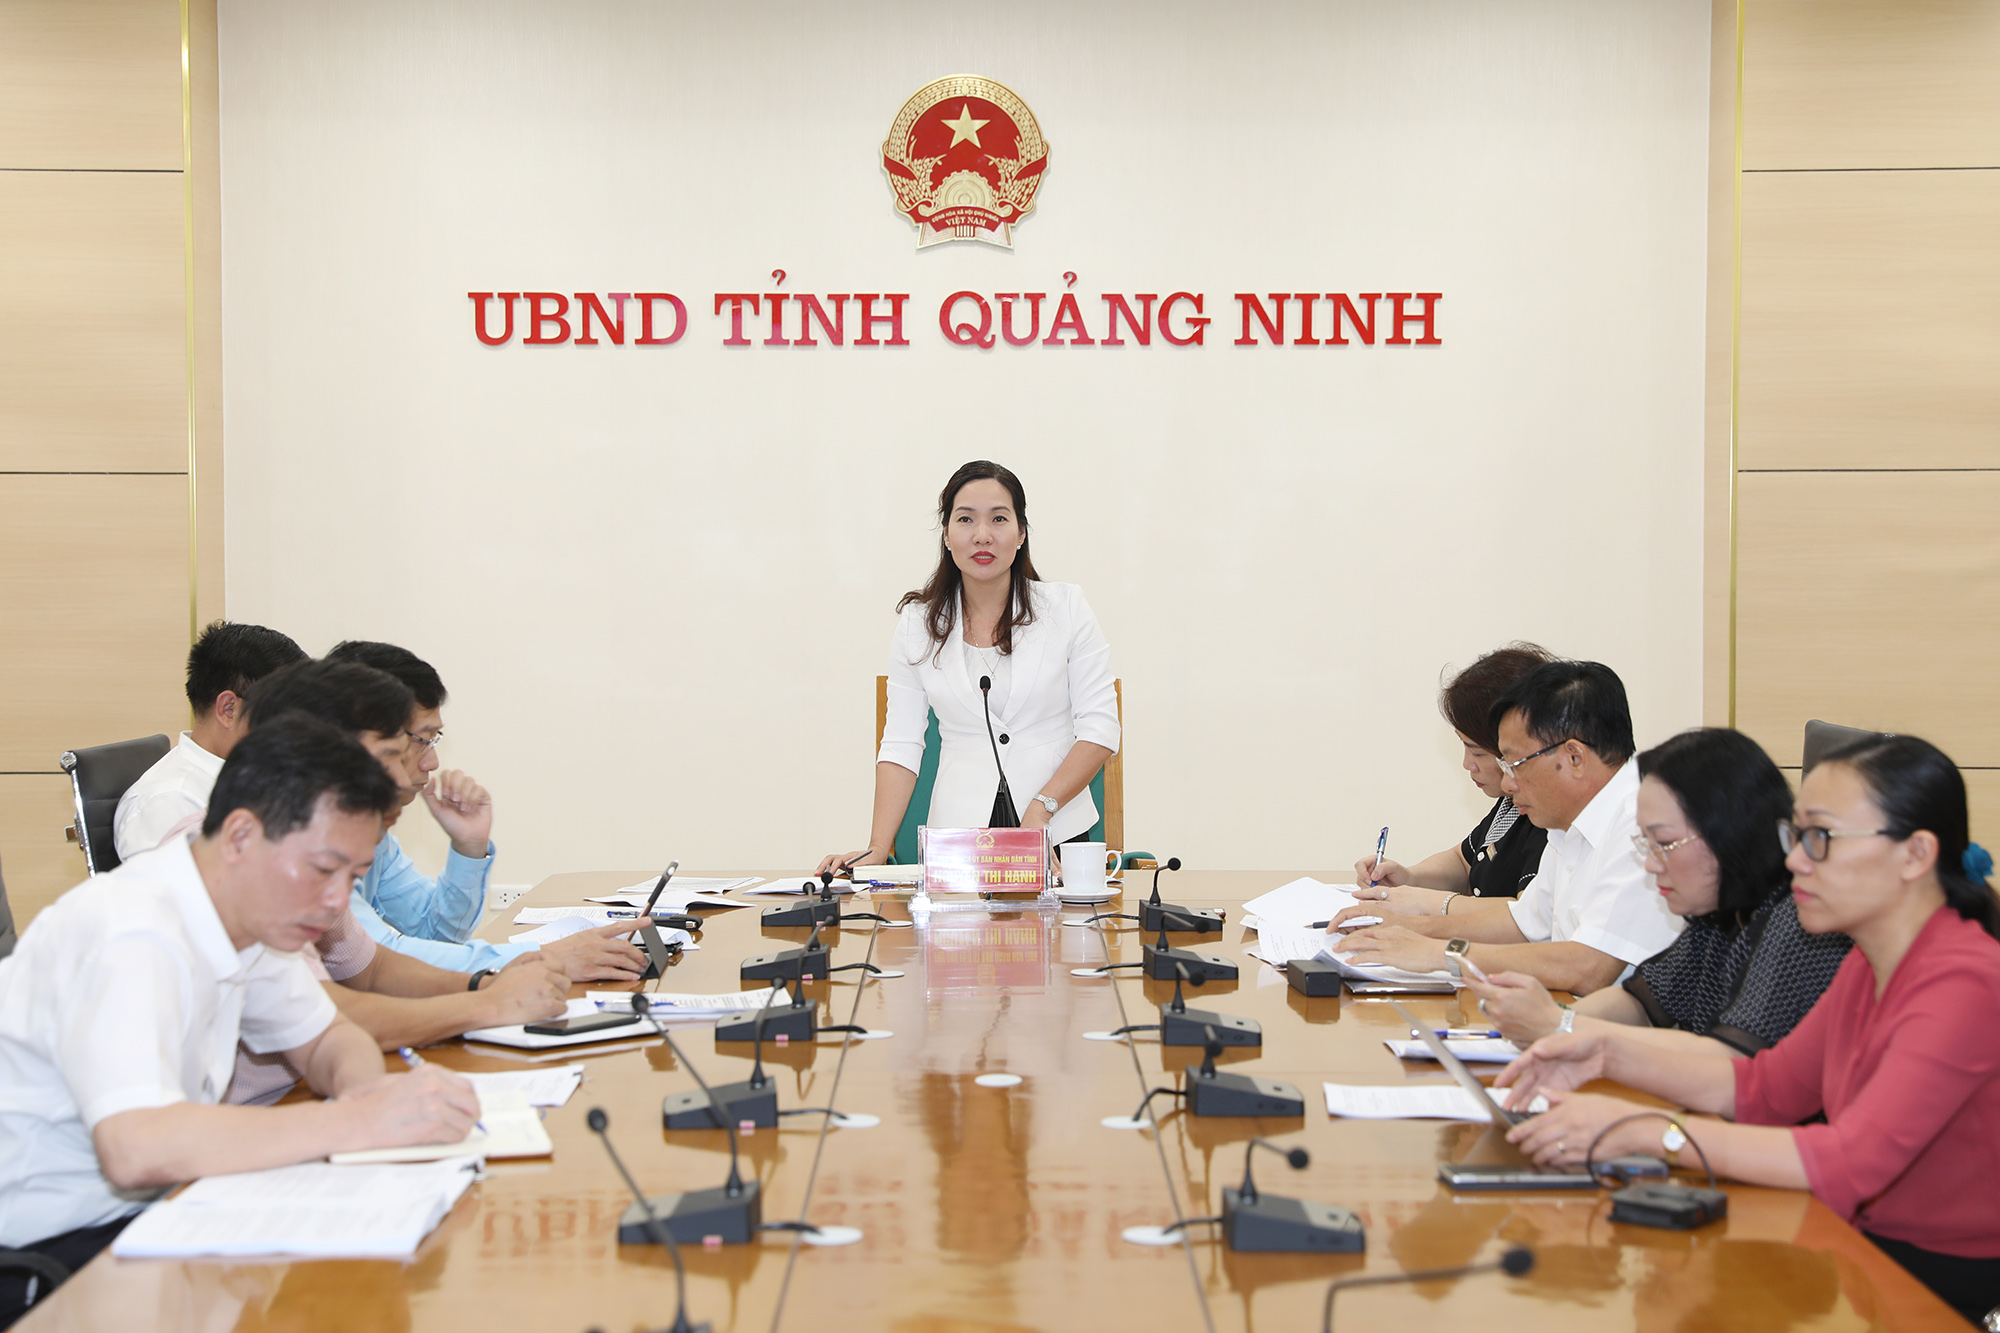 Đồng chí Nguyễn Thị Hạnh, Phó Chủ tịch UBND tỉnh phát biểu tại cuộc họp trực tuyến